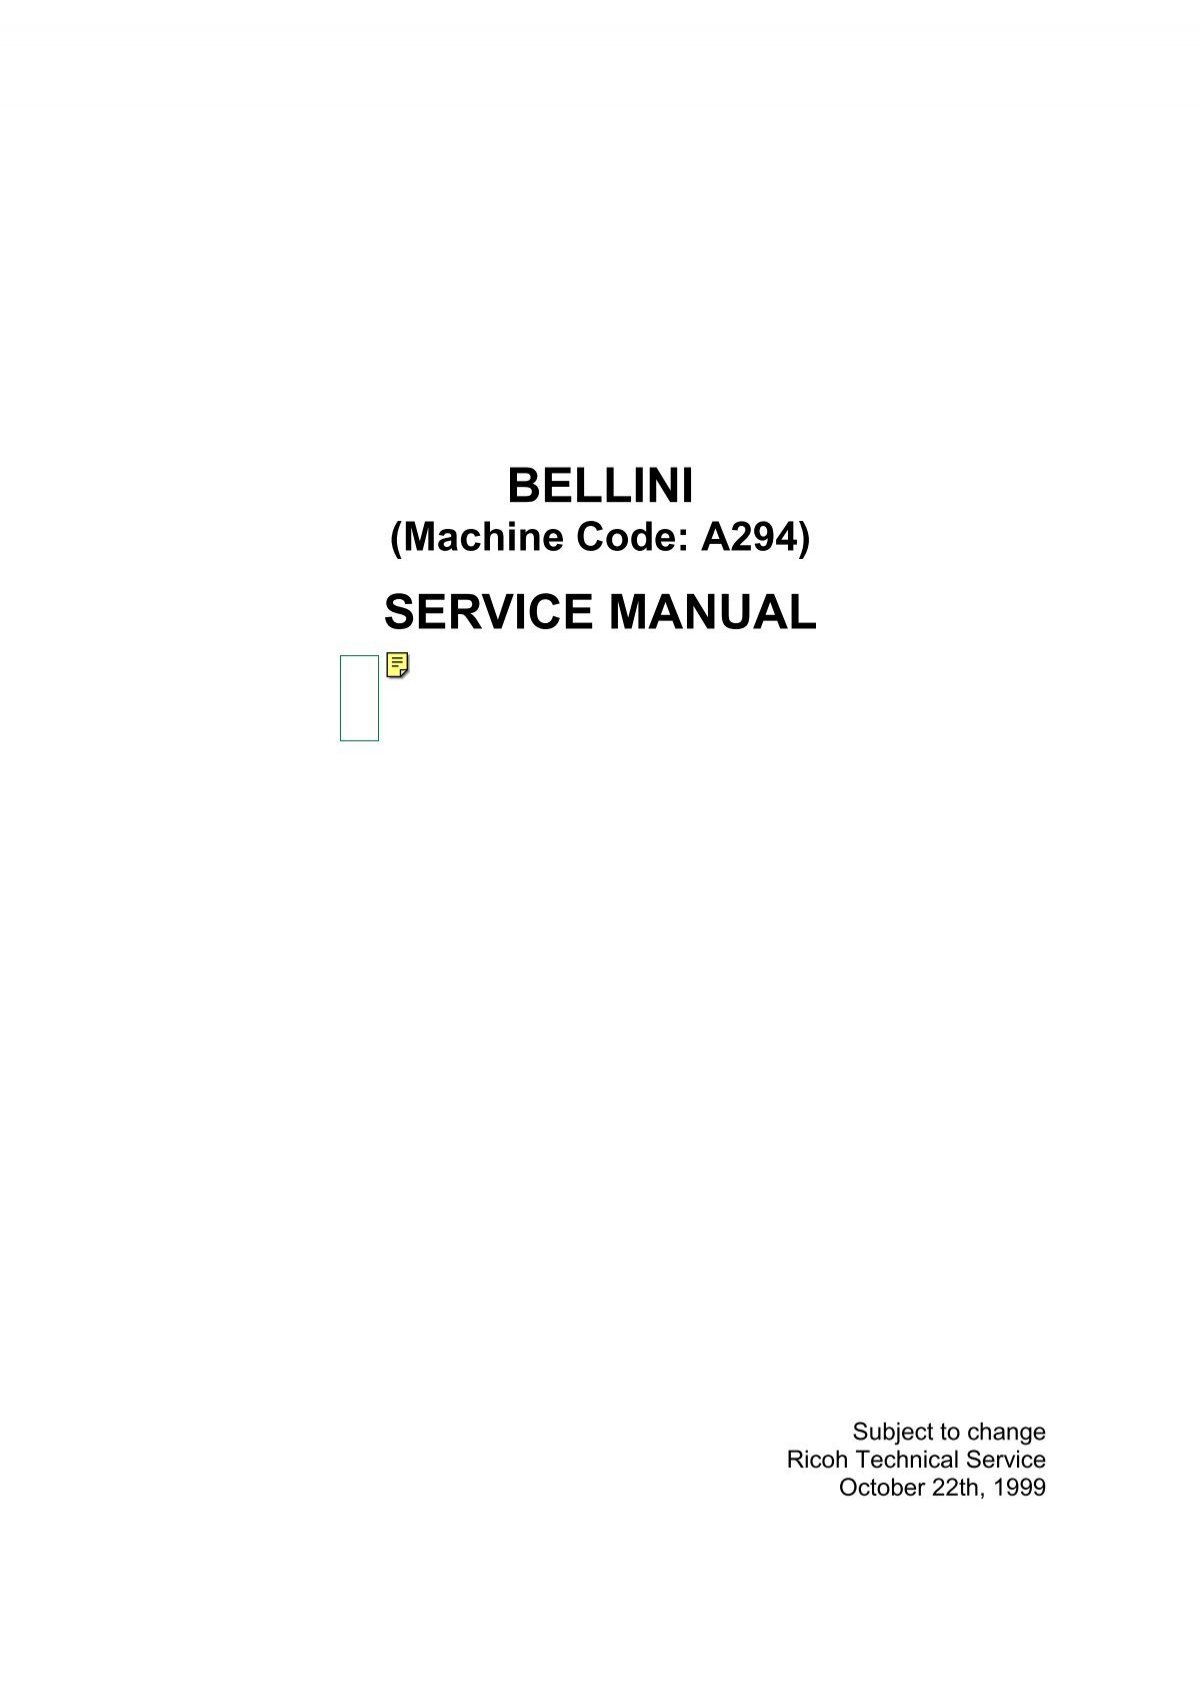 Service Manual Bellini C1a 94 Aficio 850 D485 25 3285